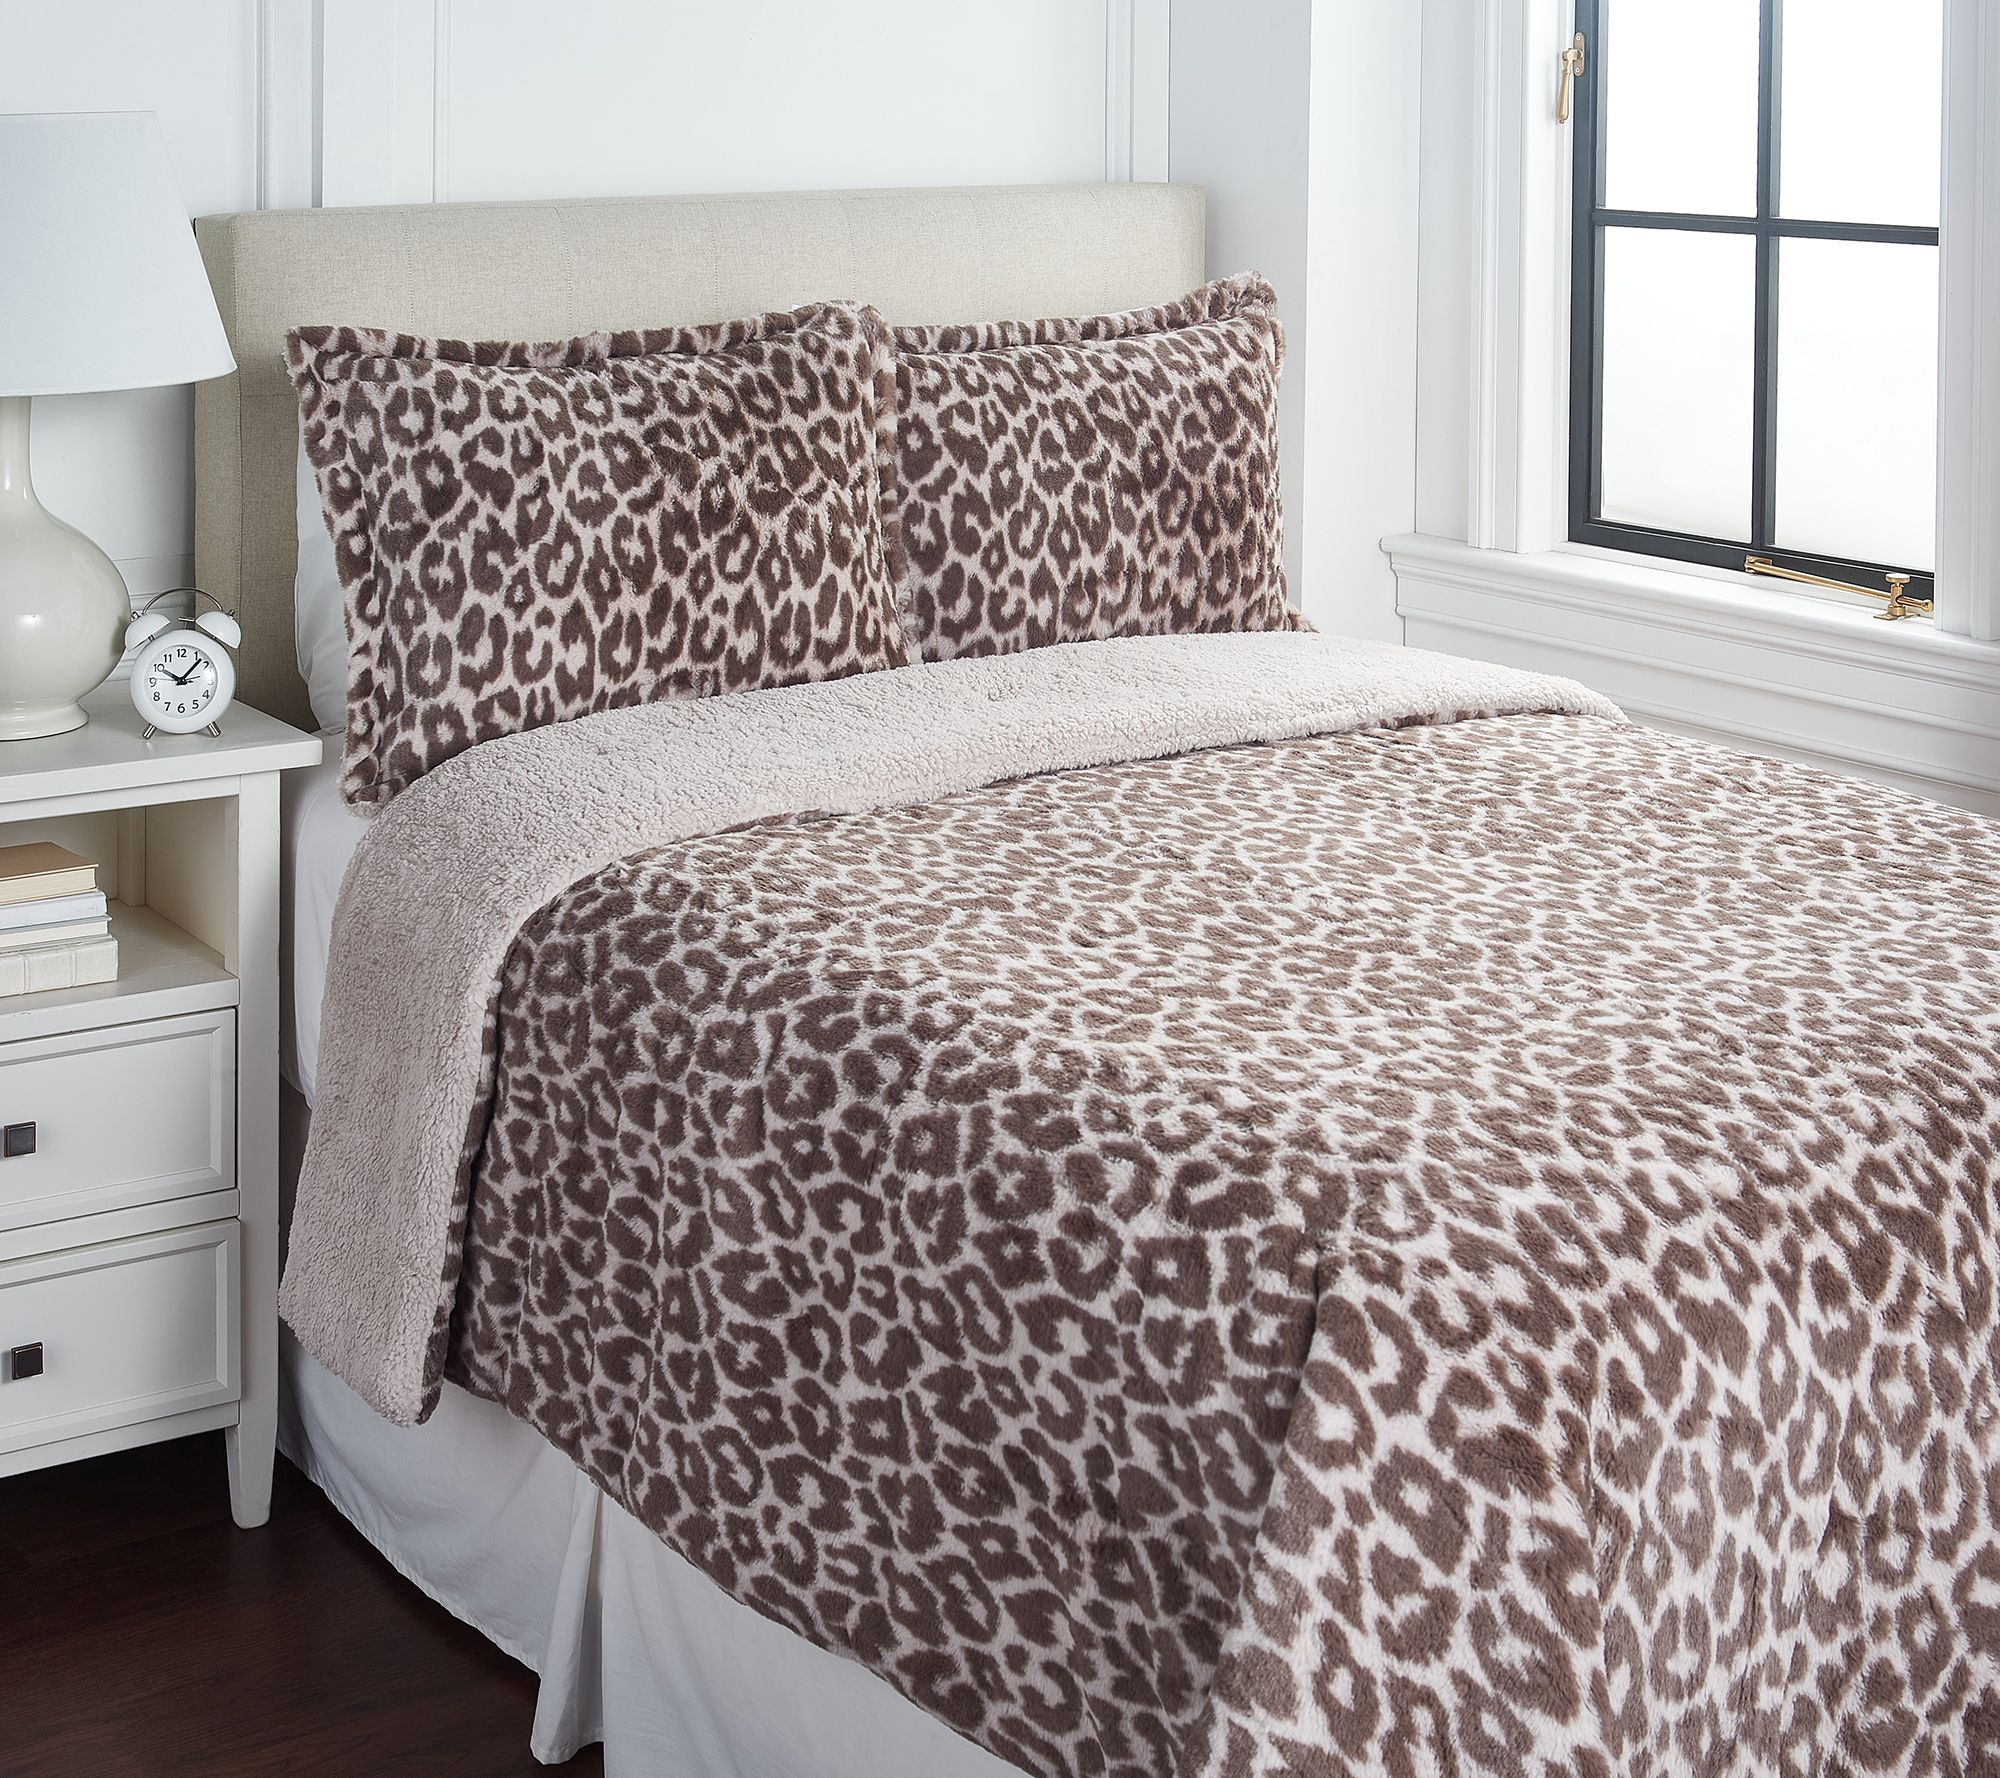 NEW Western Leopard Comforter Bedding Bedroom  Set 5pc 